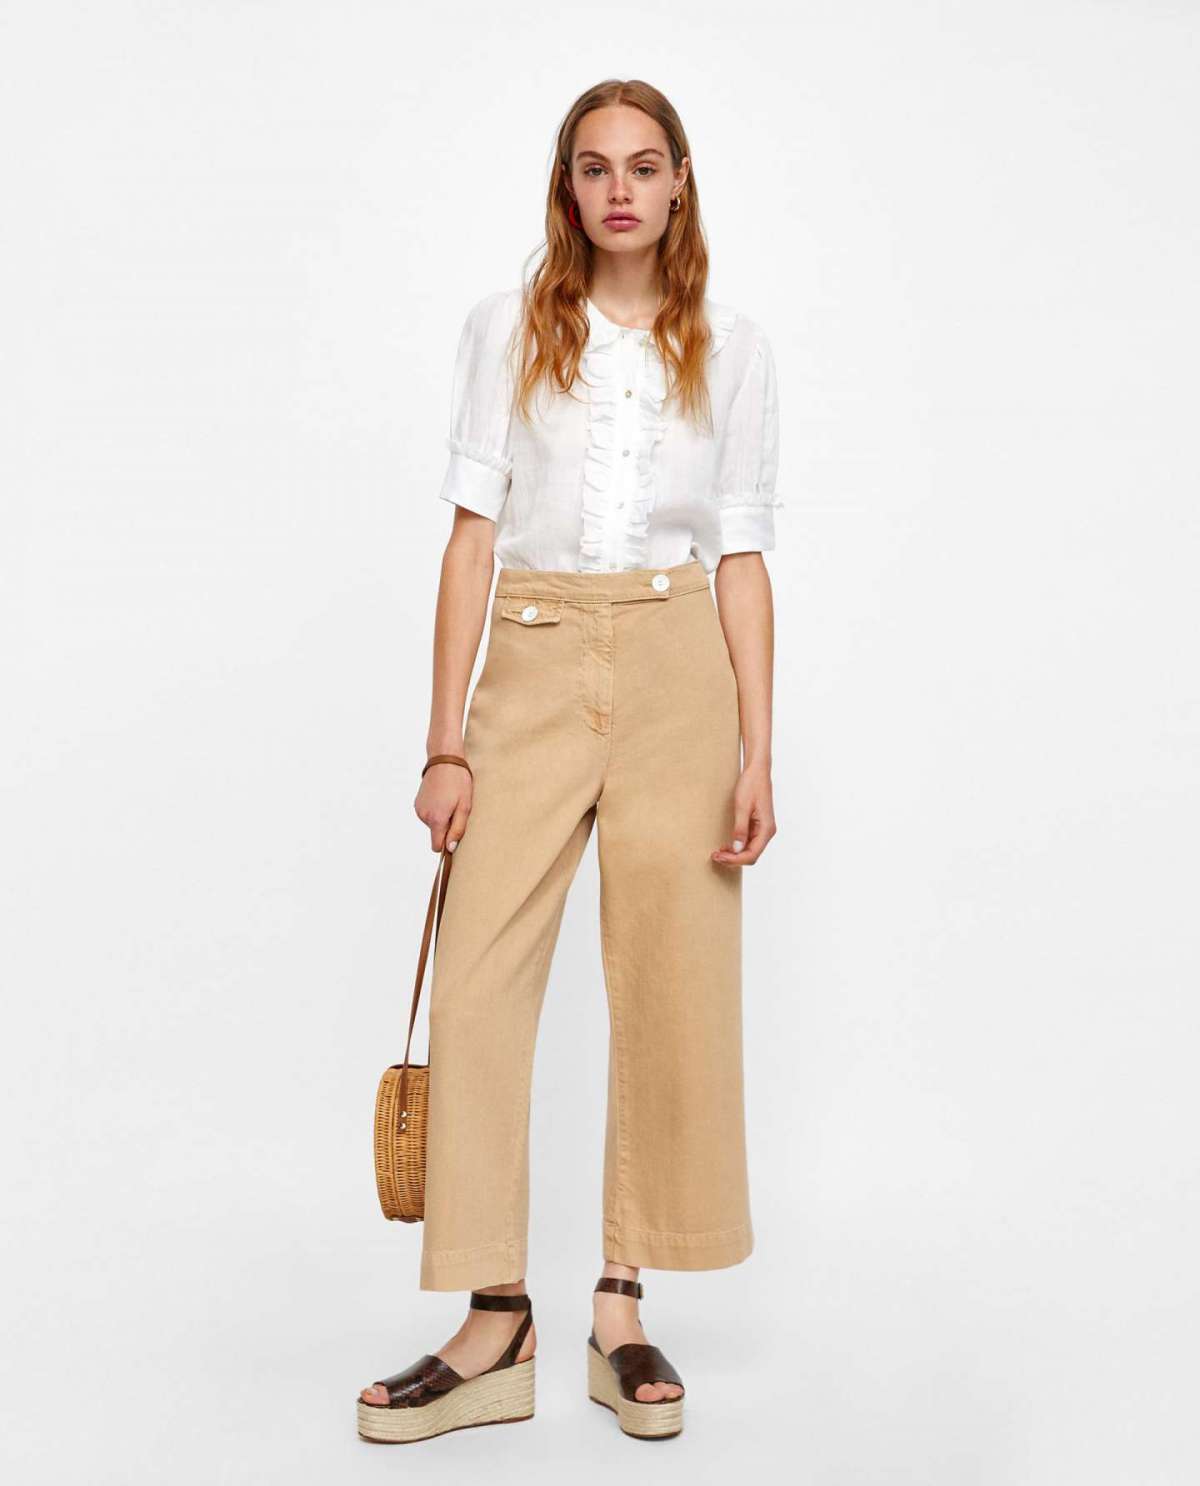 Pantaloni culotte e camicia Zara